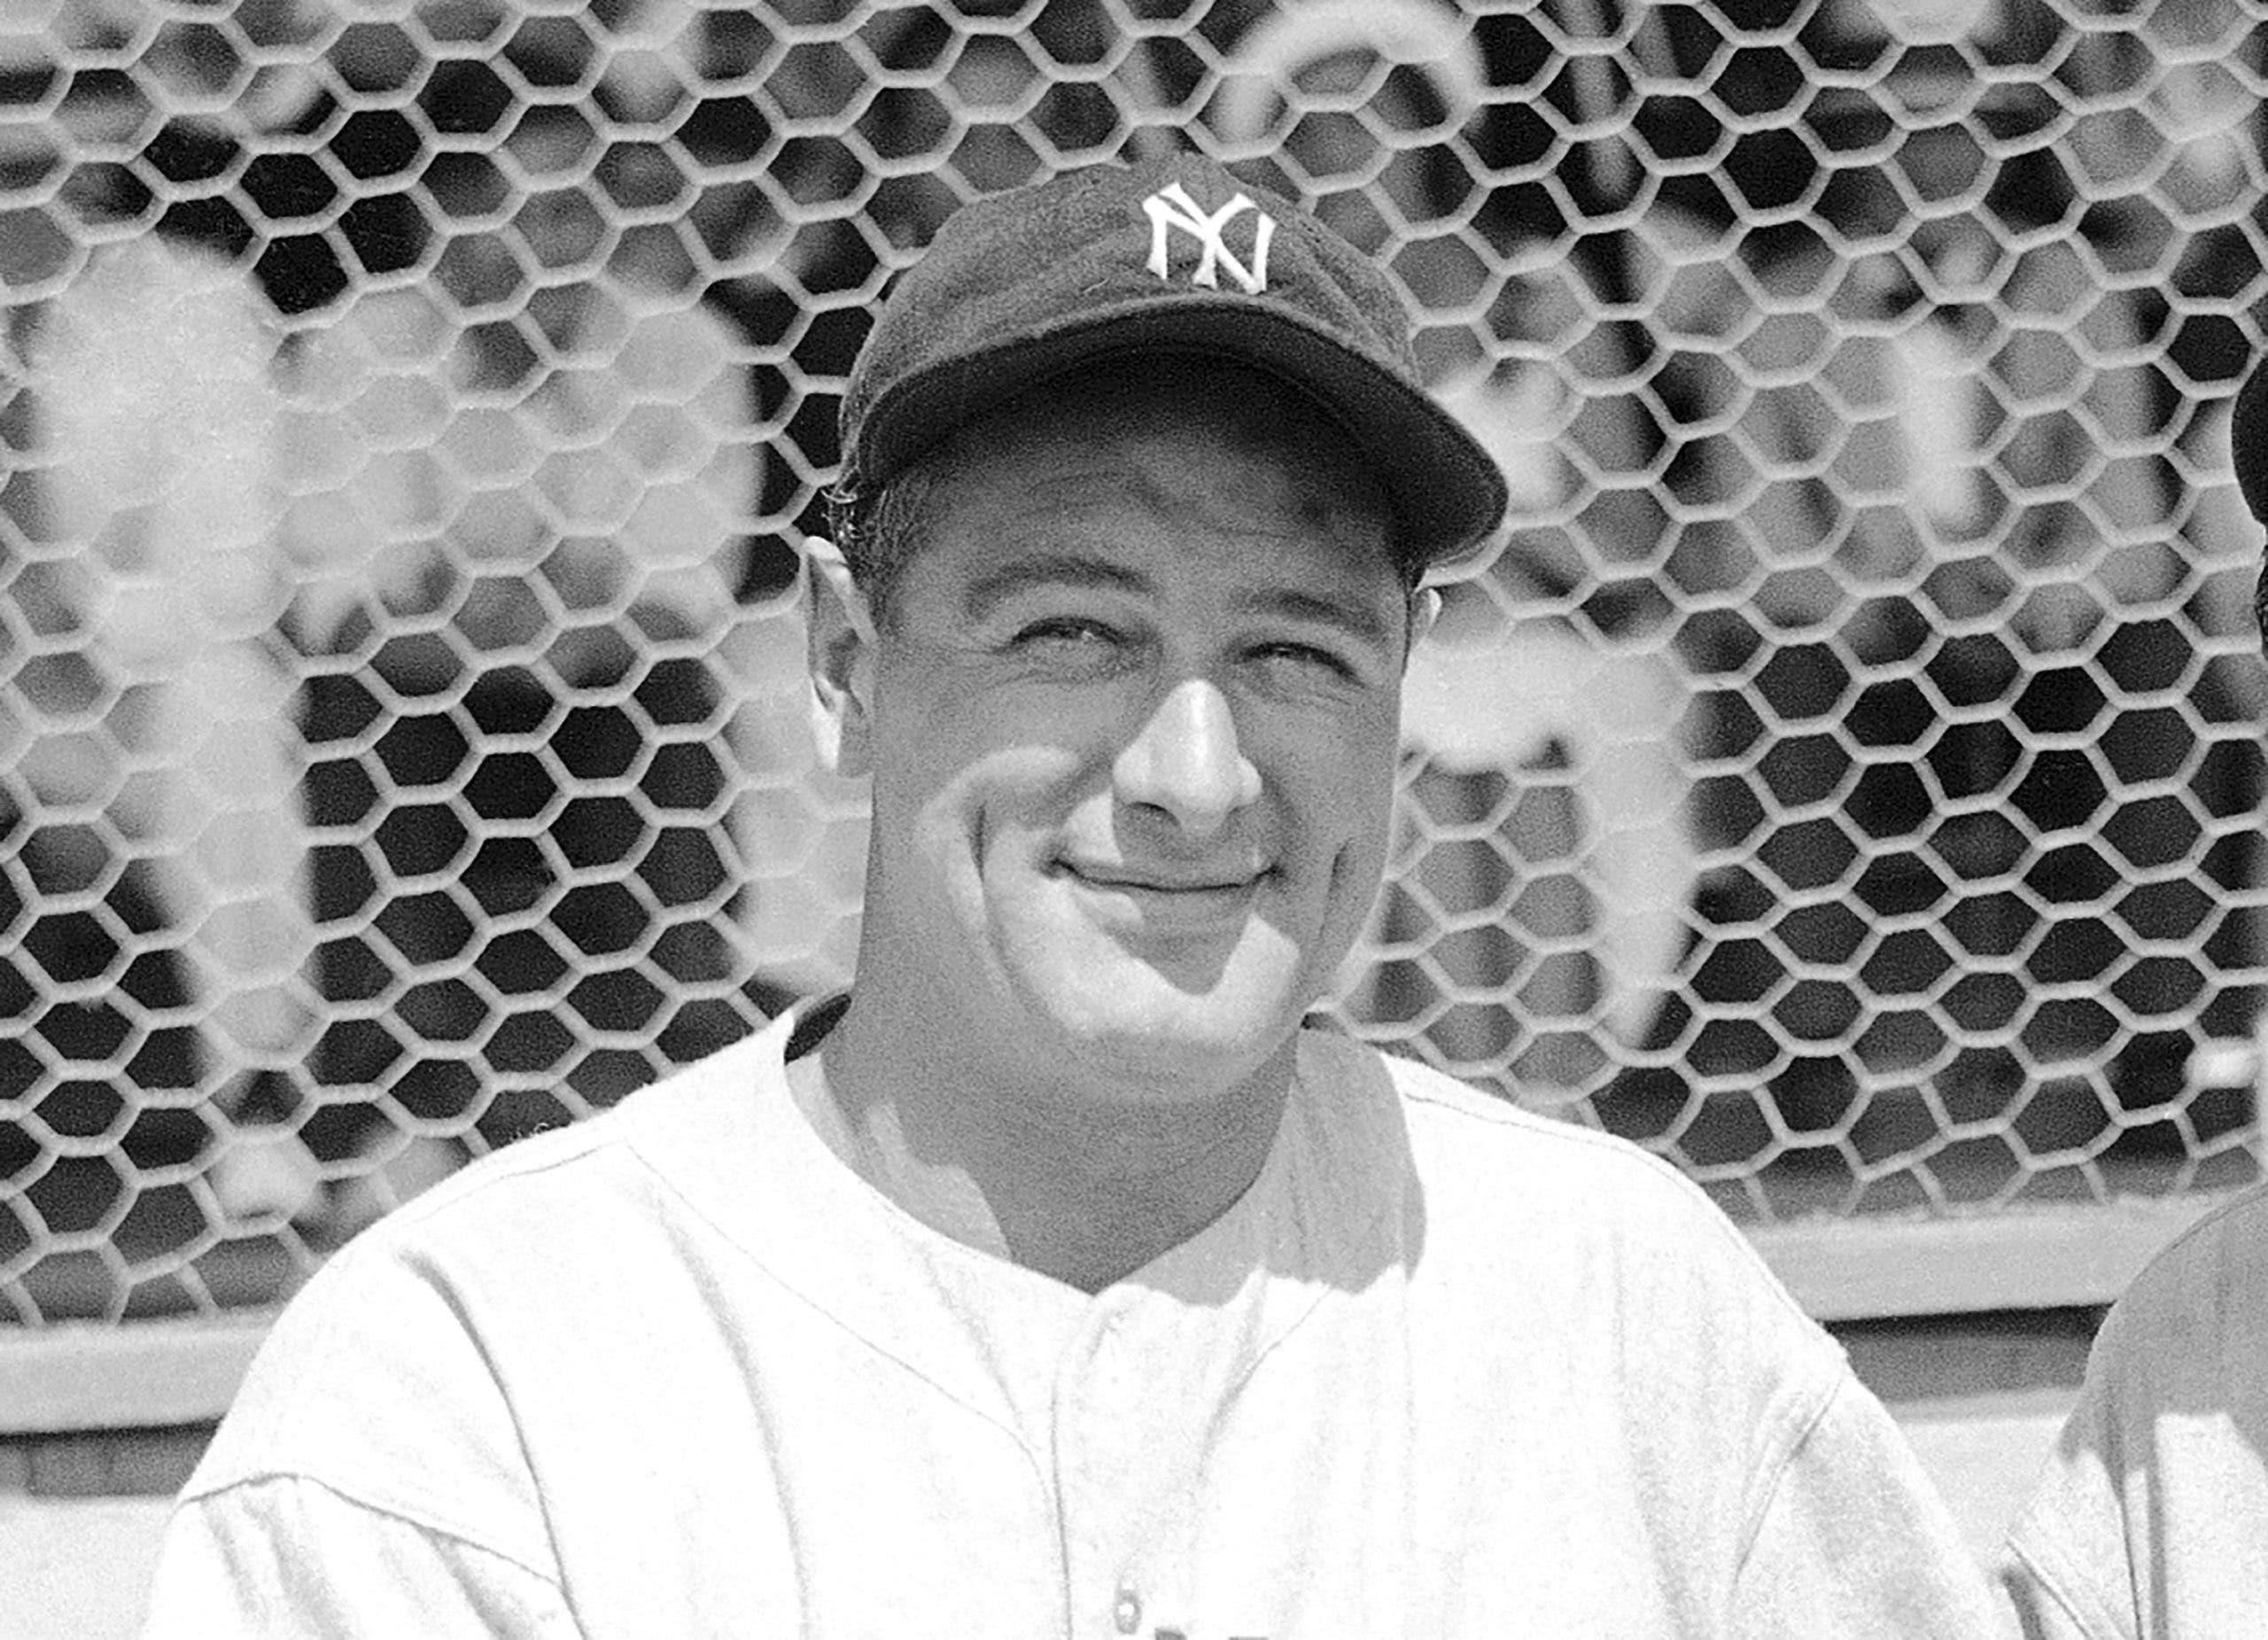 El 2 de junio, elegido como el “Día de Lou Gehrig” en las Grandes Ligas